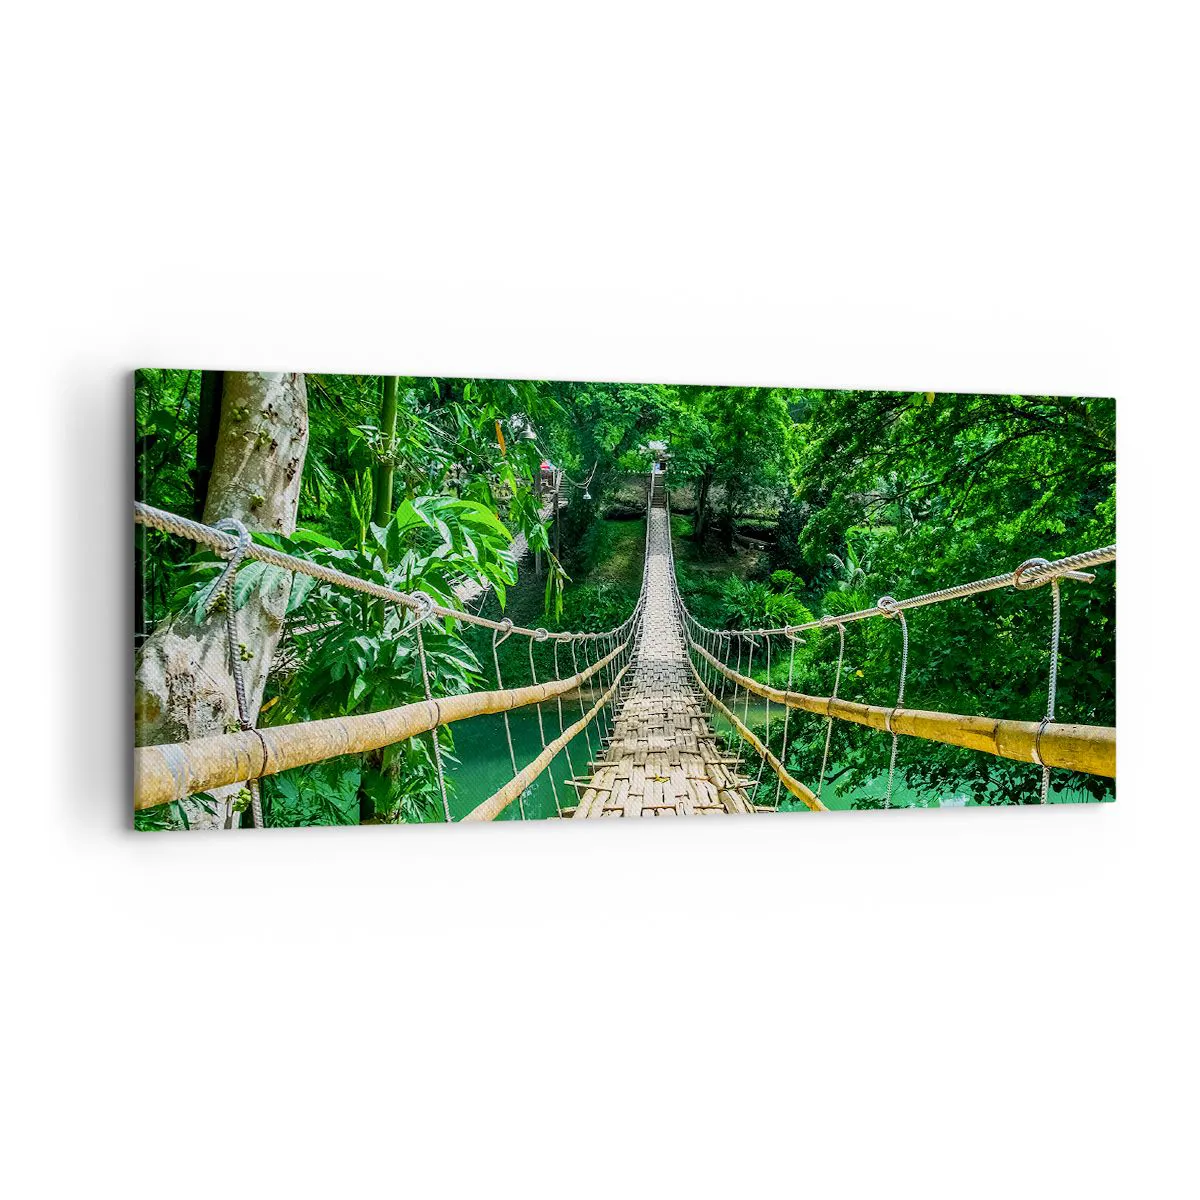 Obraz na Płótnie Arttor 120x50 cm - Małpi most nad zielenią - Krajobraz, Dżungla, Filipiny, Bambusowy Most, Podróże, Do Salonu, Do Sypialni, Zielony, Brązowy, Poziomy, Płótno, AB120x50-3185